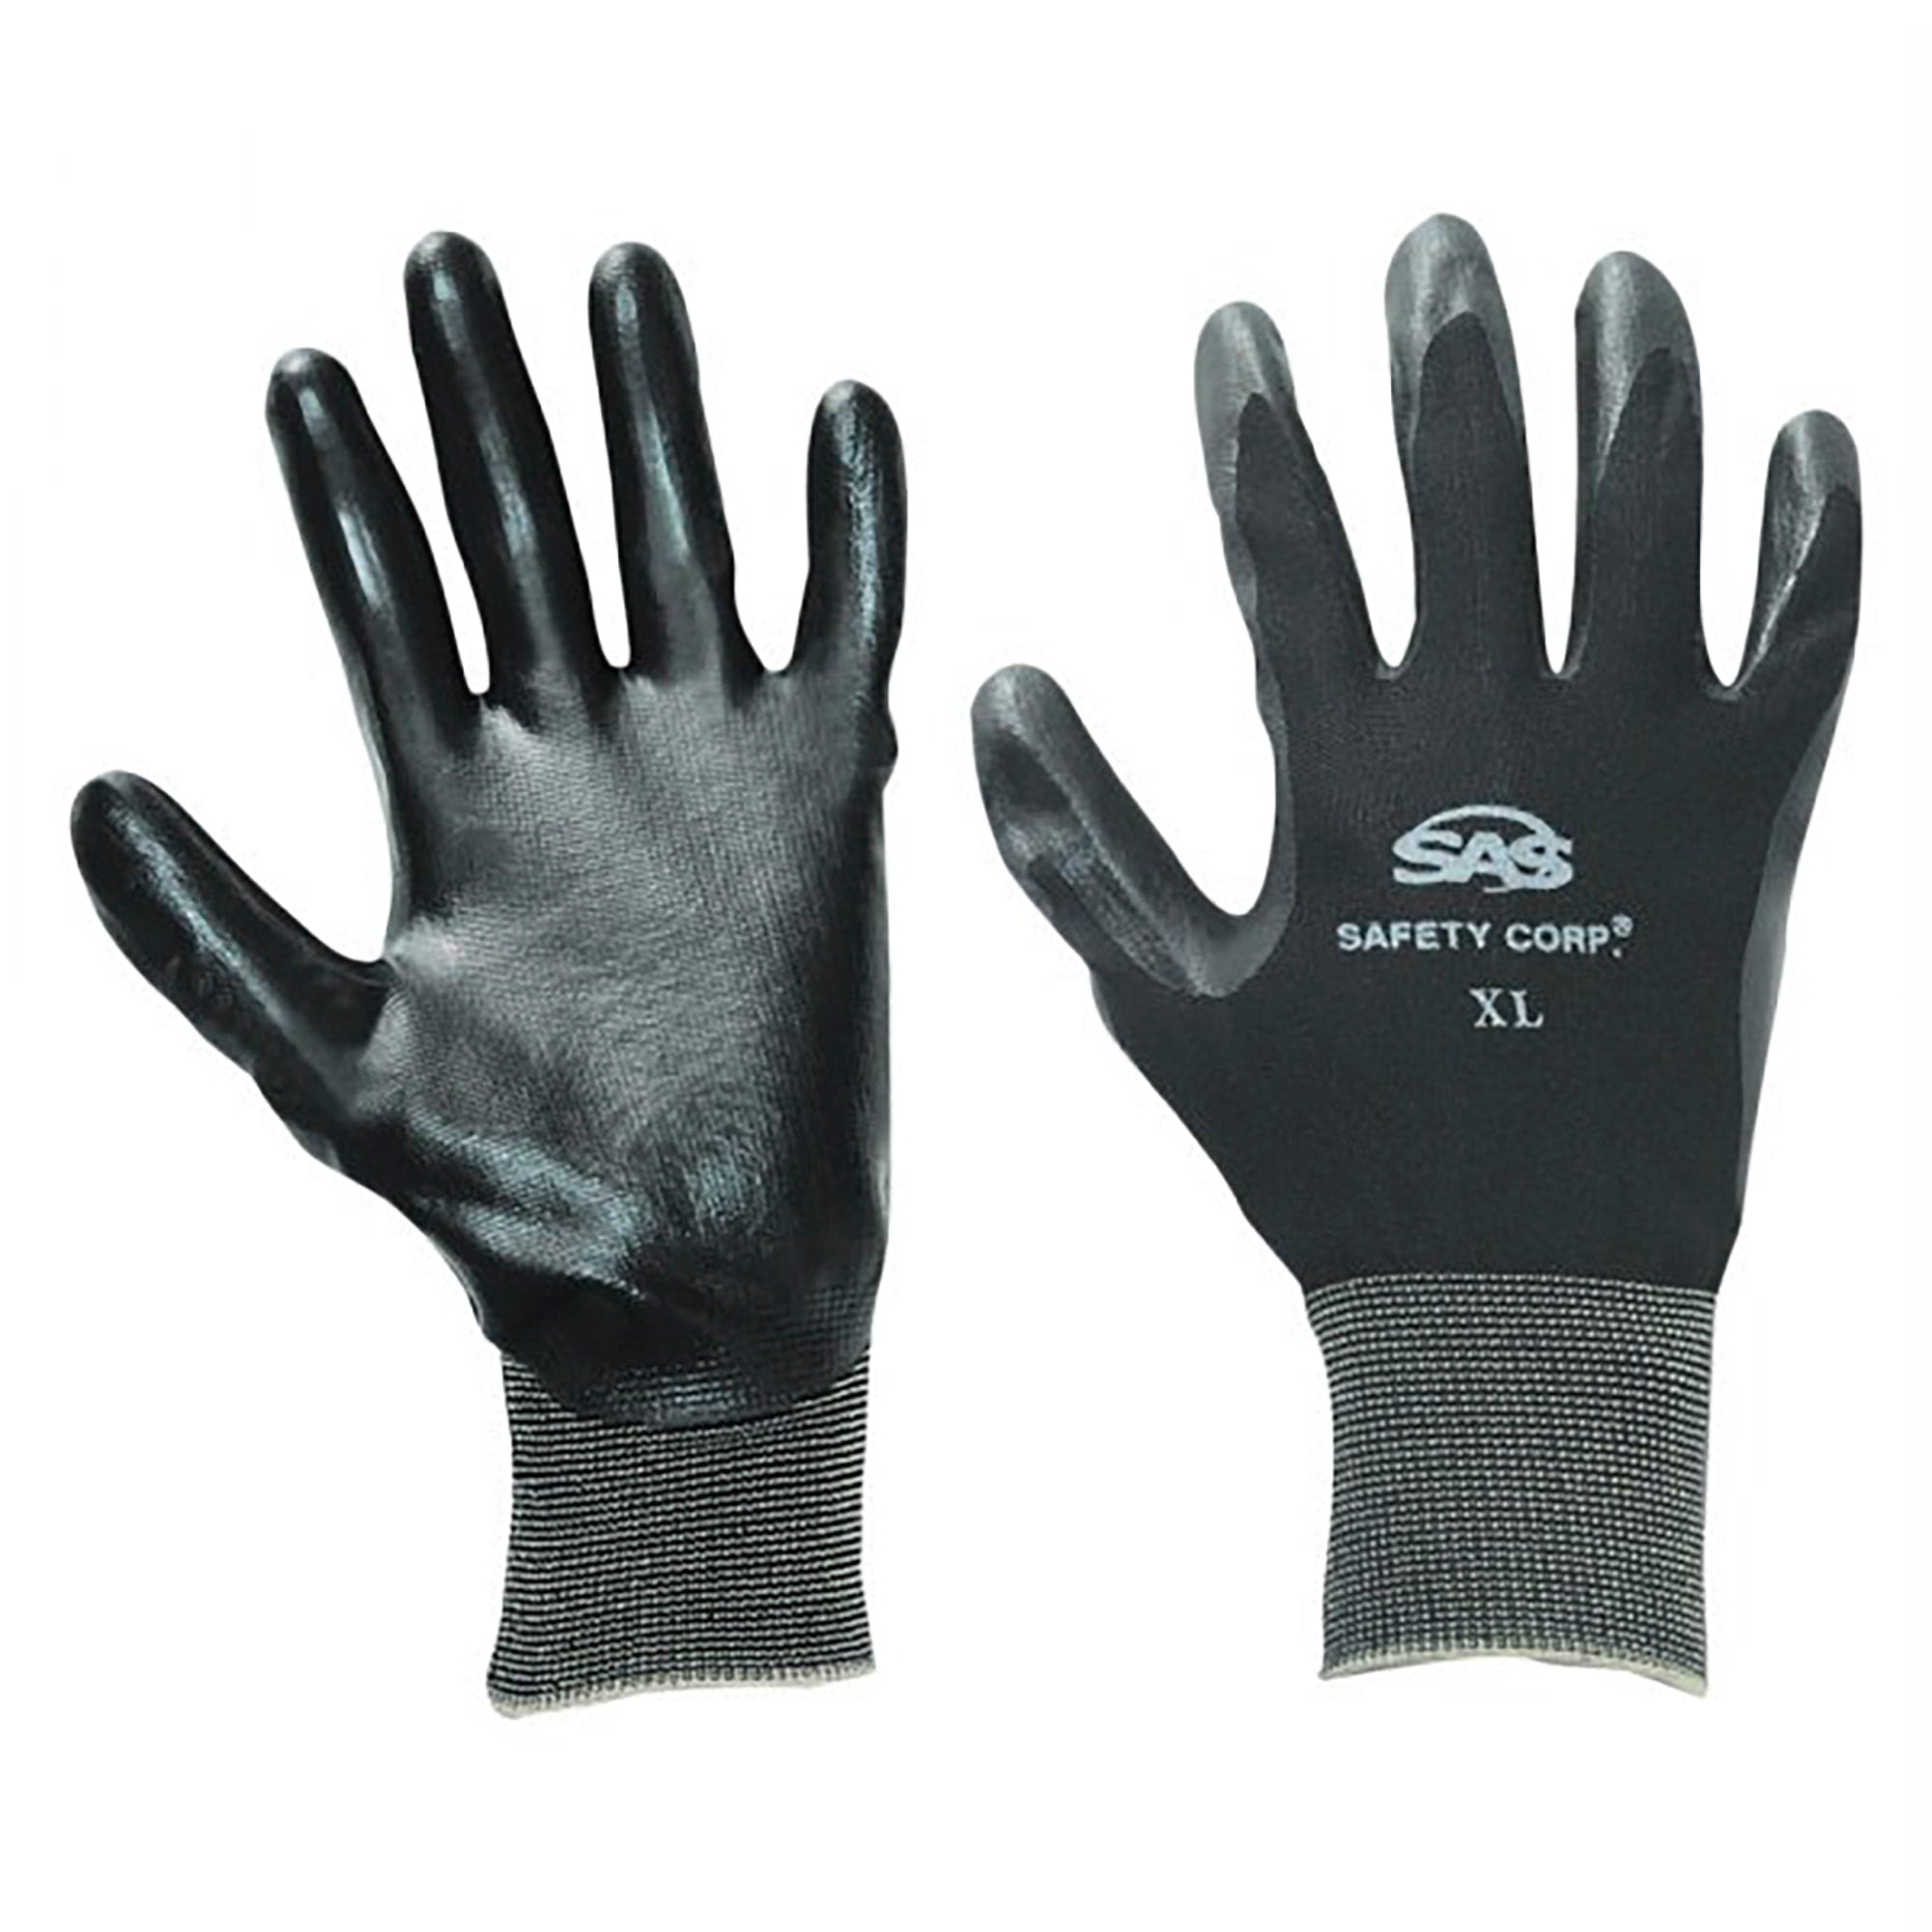 PawZ Black Nylon Knit Shell Gloves - Nitrile Palm Coating - X Large SAS Safety 640-1910